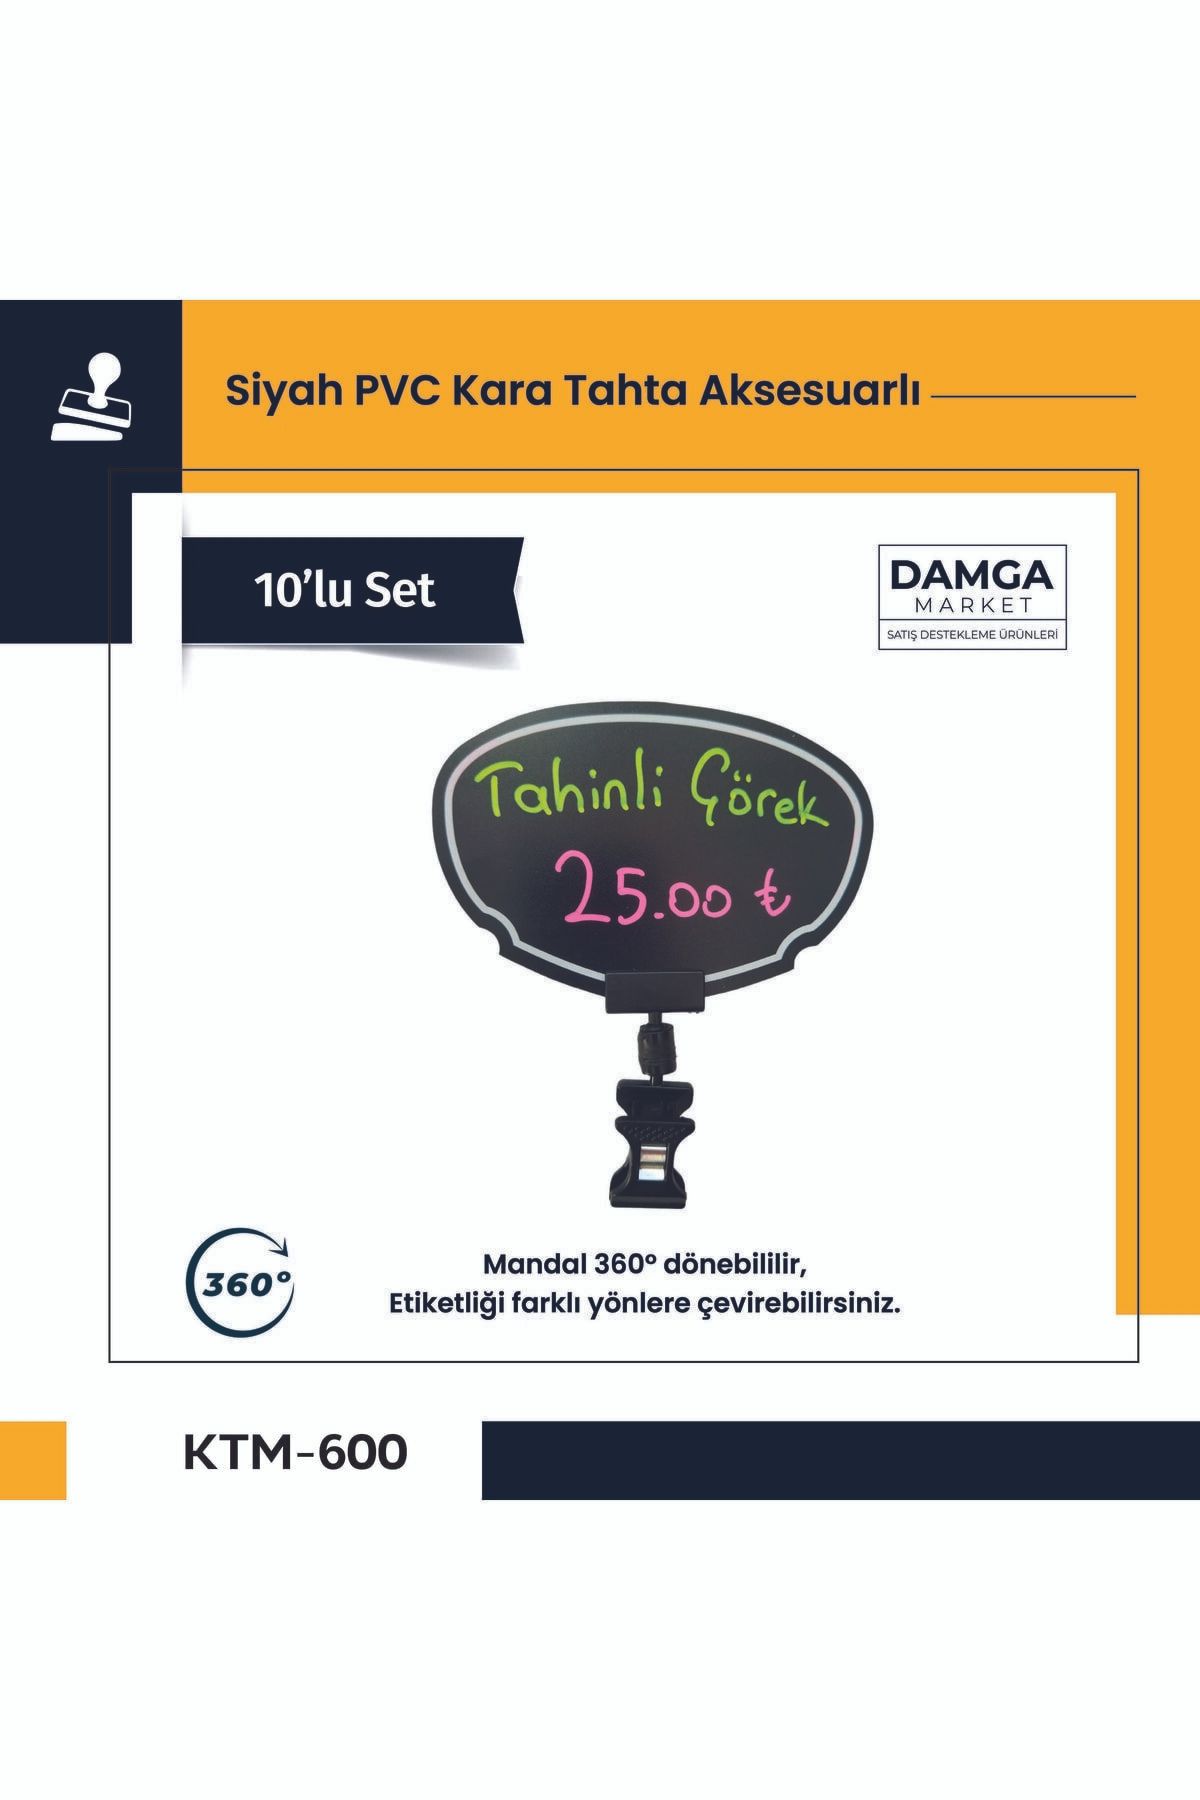 DamgaMarket Siyah Pvc Fiyat Etiketleri Silinebilir,yeniden Yazılabilir,ayarlanabilir Mandallı Pvc Levha,8cmx12cm